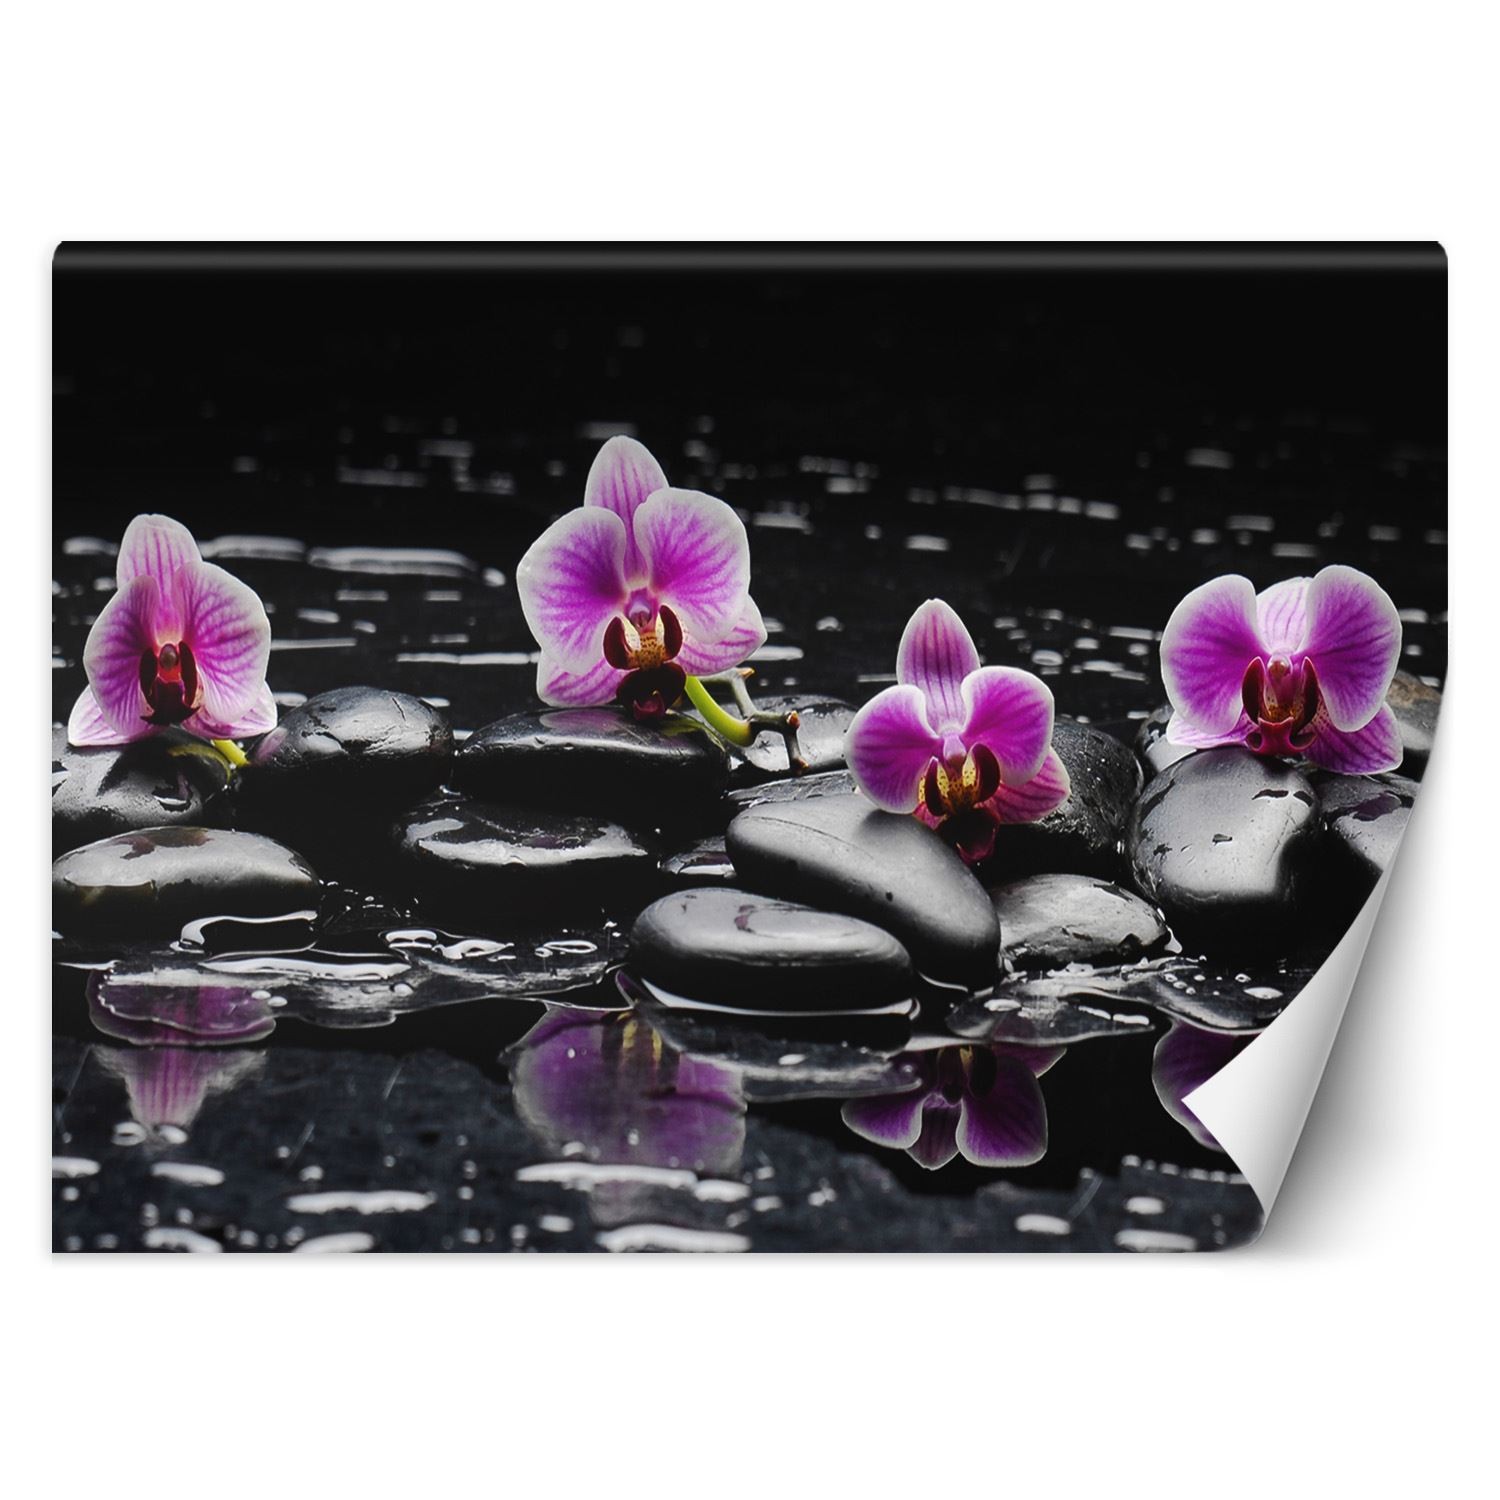 Trend24 – Behang – Zen Stones & Orchid – Behangpapier – Fotobehang – Behang Woonkamer – 450x315x2 cm – Incl. behanglijm